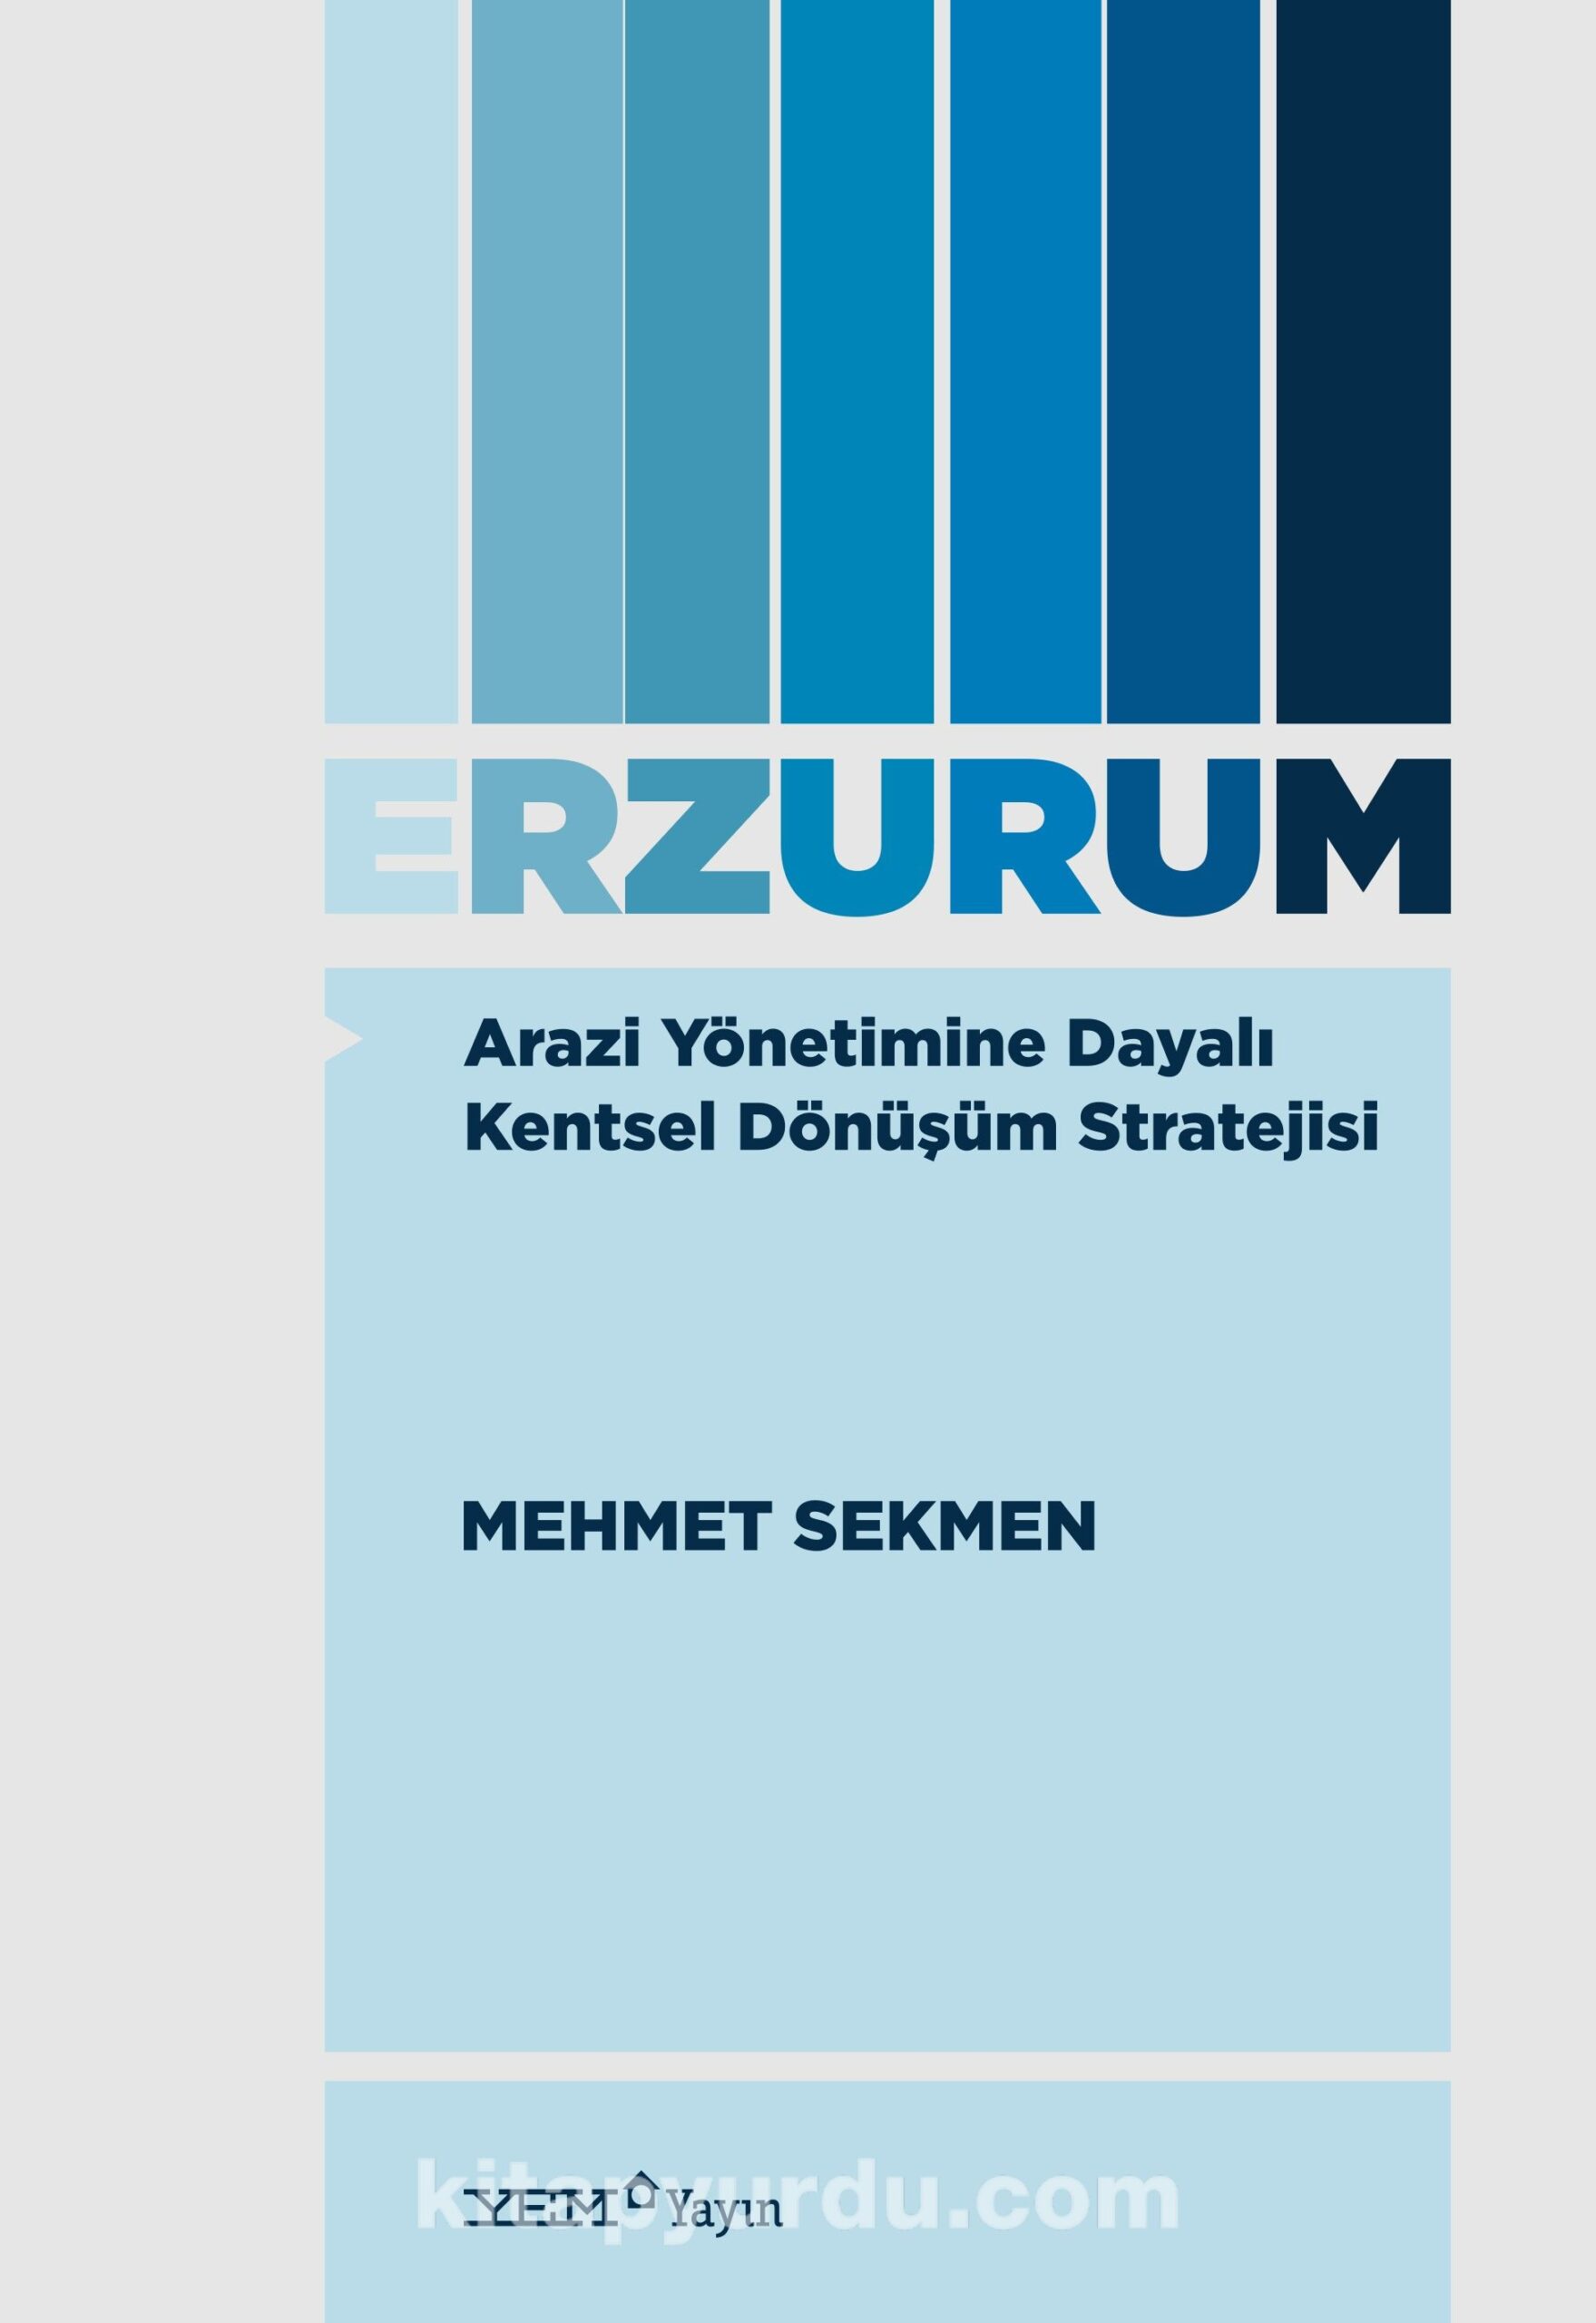 Arazi Yönetimine Dayalı Kentsel Dönüşüm Stratejisi: Erzurum